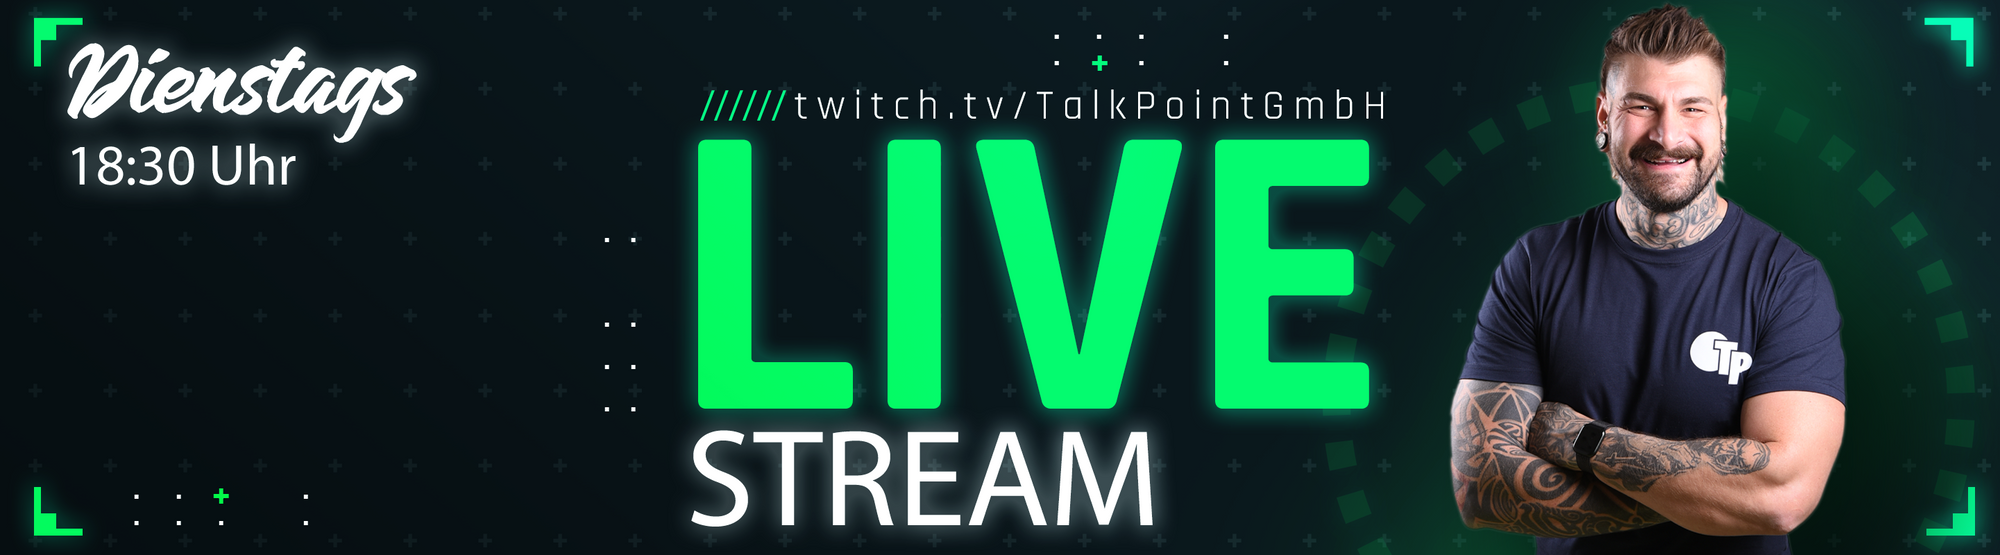 TP Twitch-Live Stream am Dienstag um 18:30 Uhr